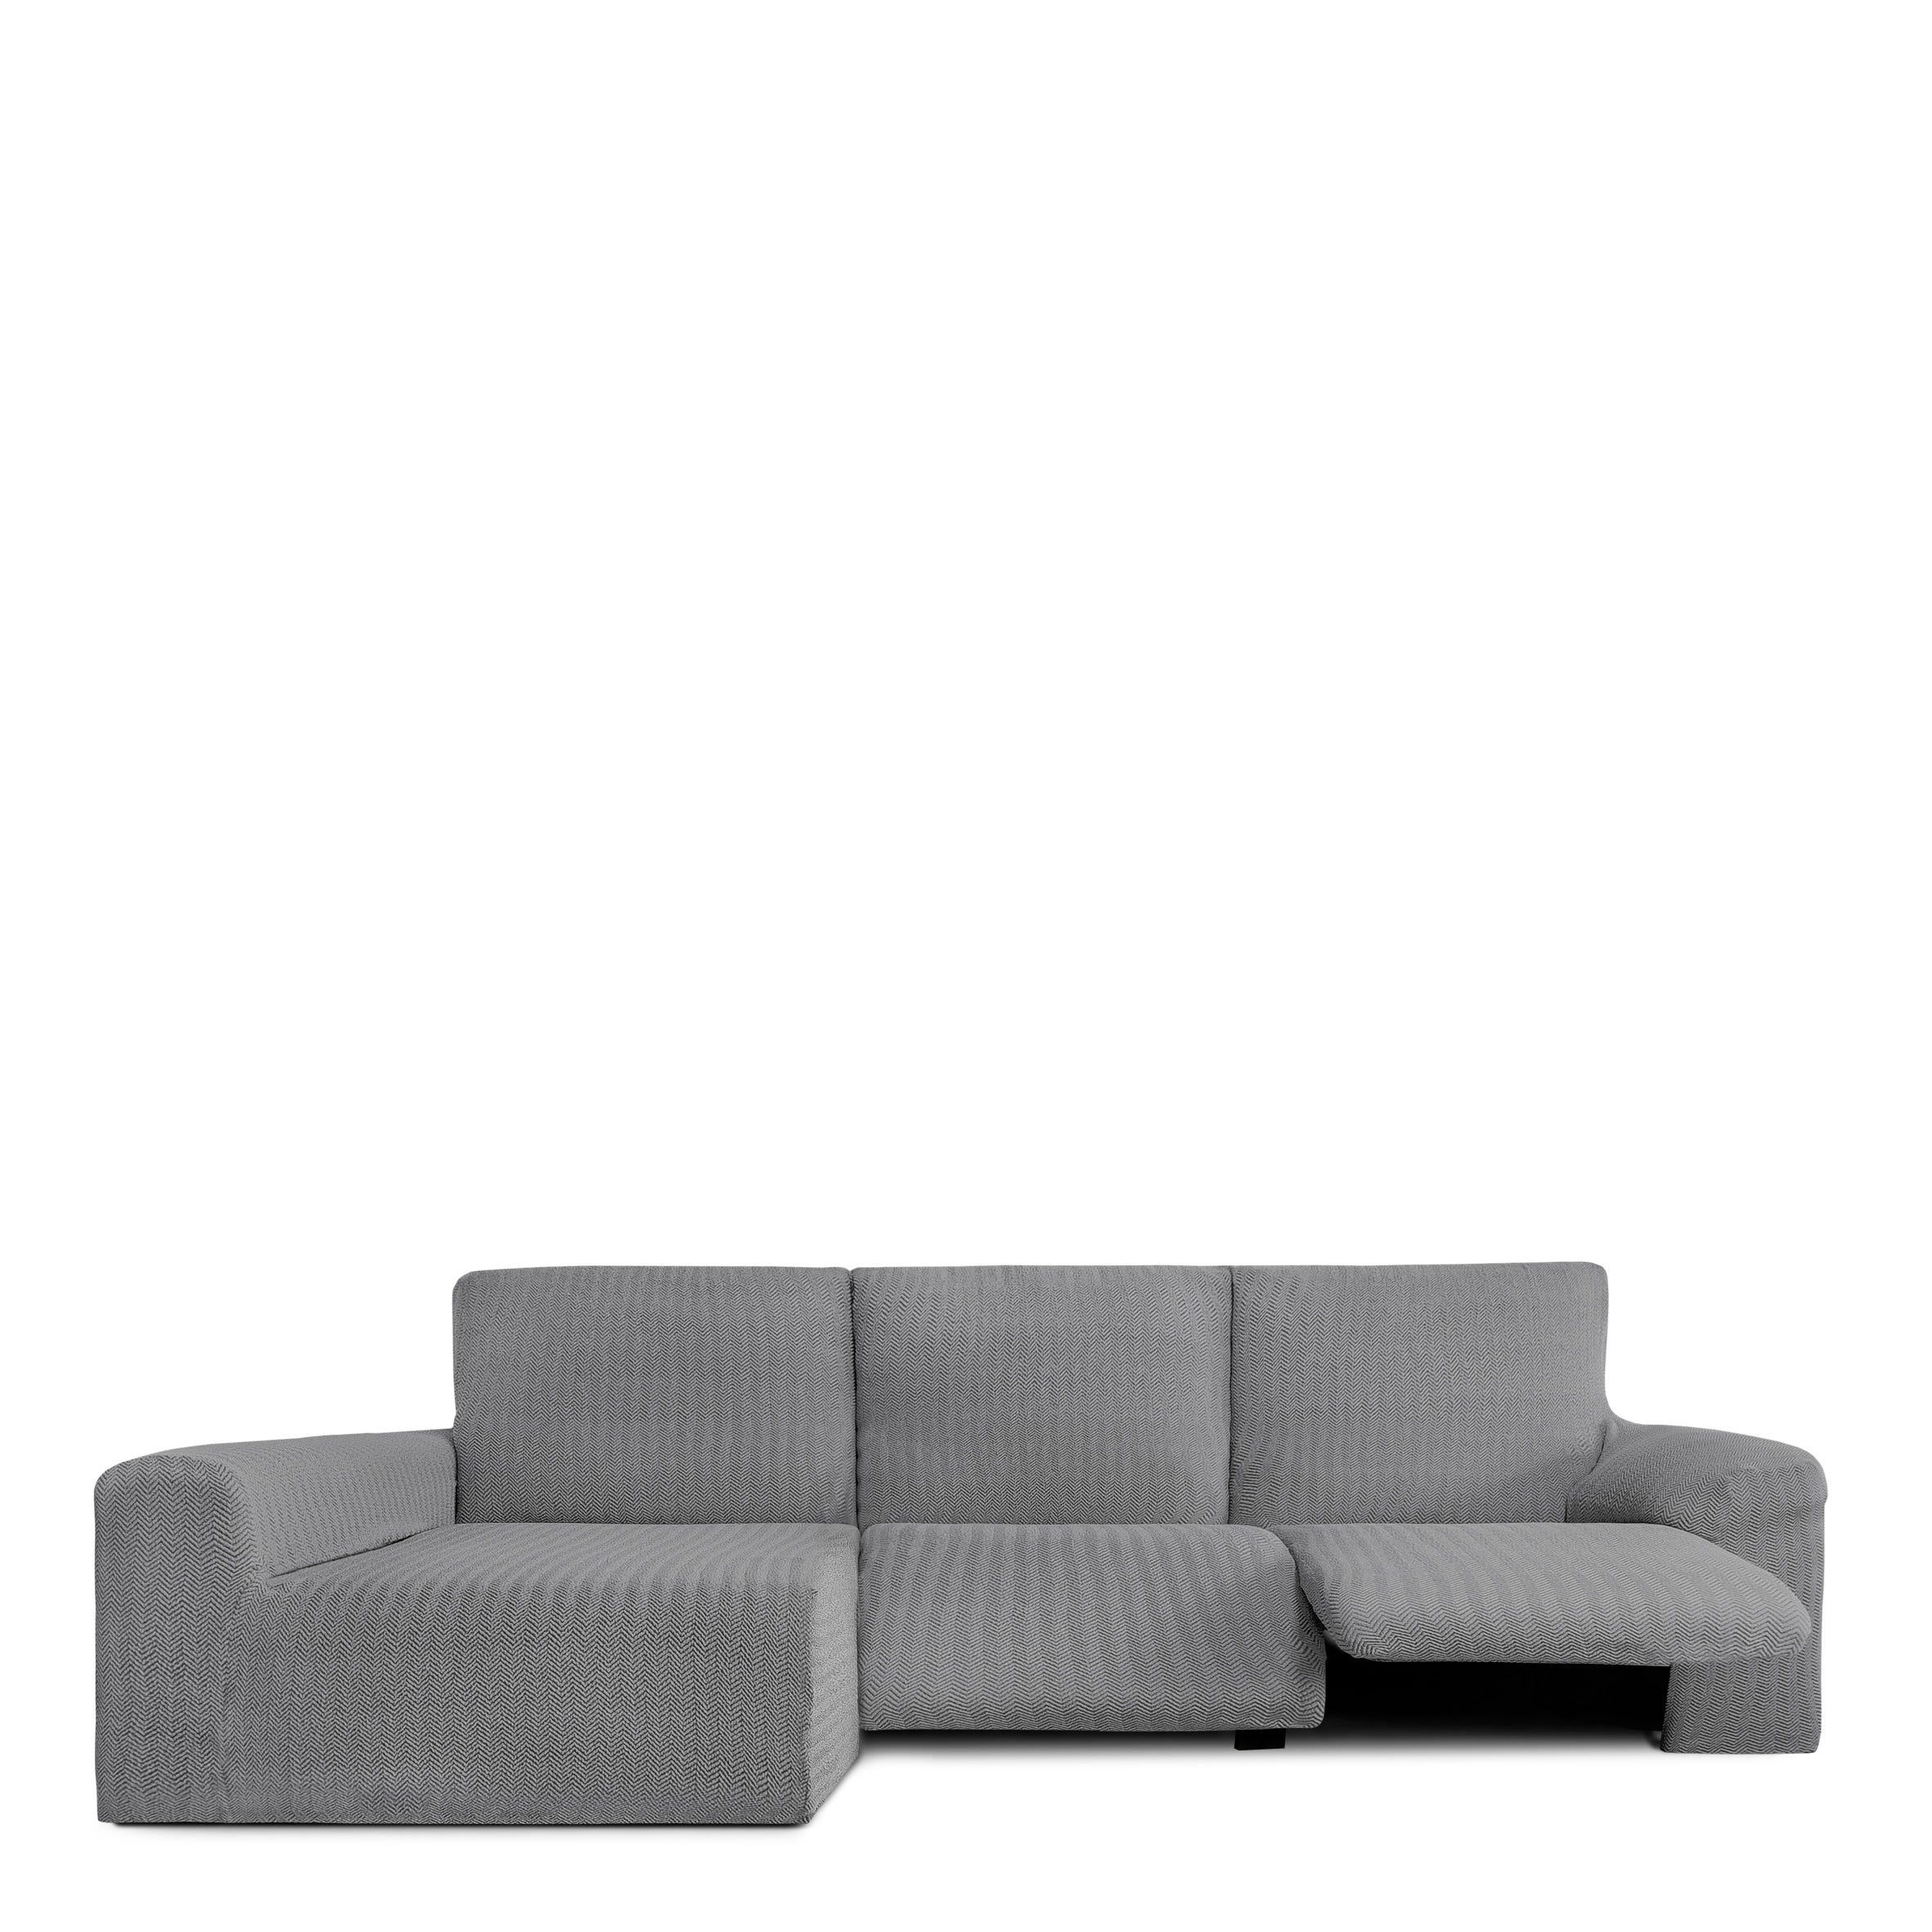 Copridivano Jaz per divano ad angolo relax sinistro grigio 250 - 360 cm